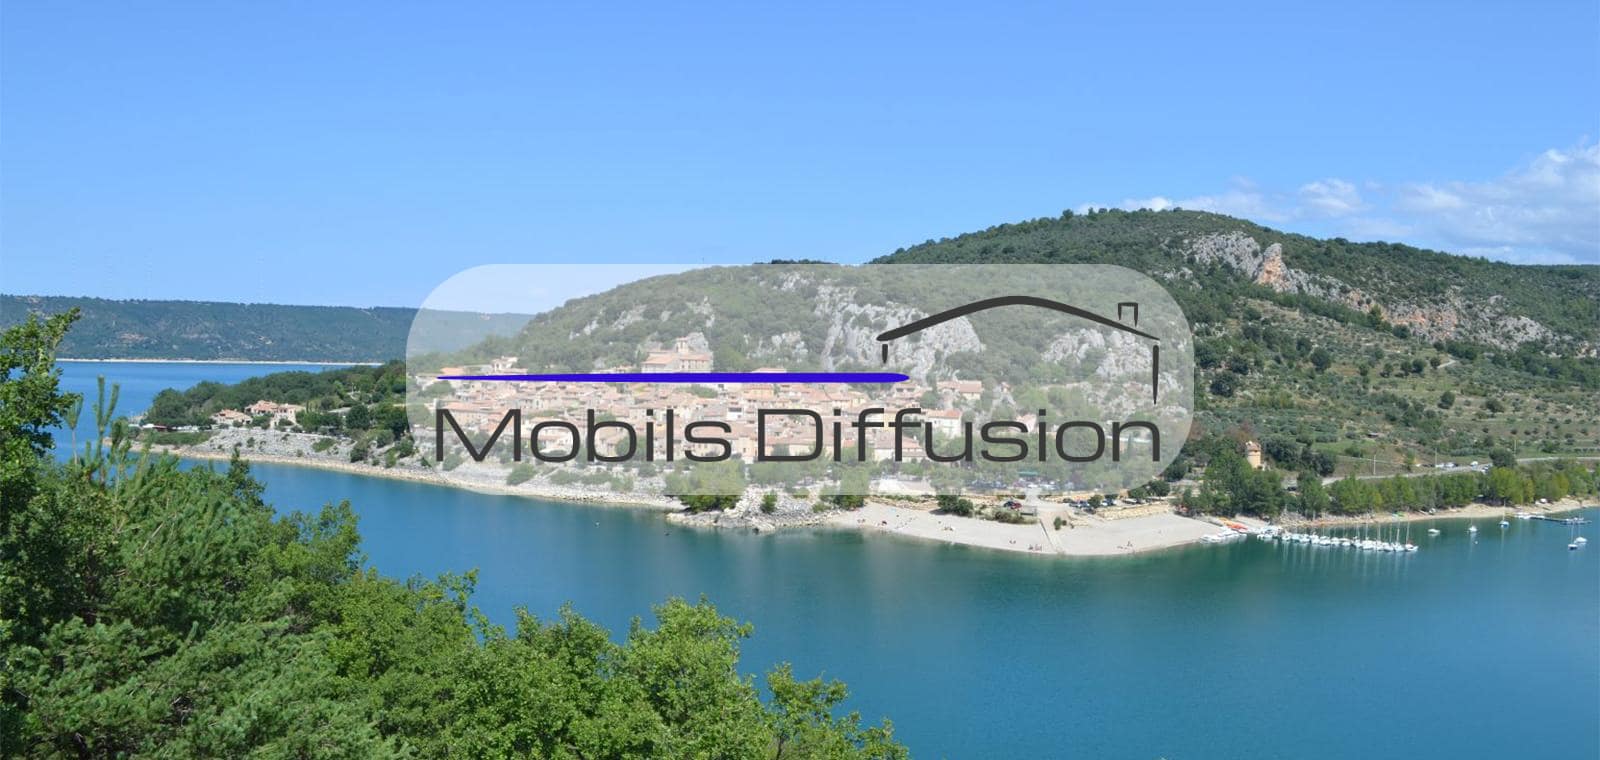 Mobils Diffusion - Terrain pour mobil-home en camping PACA près des gorges du Verdon